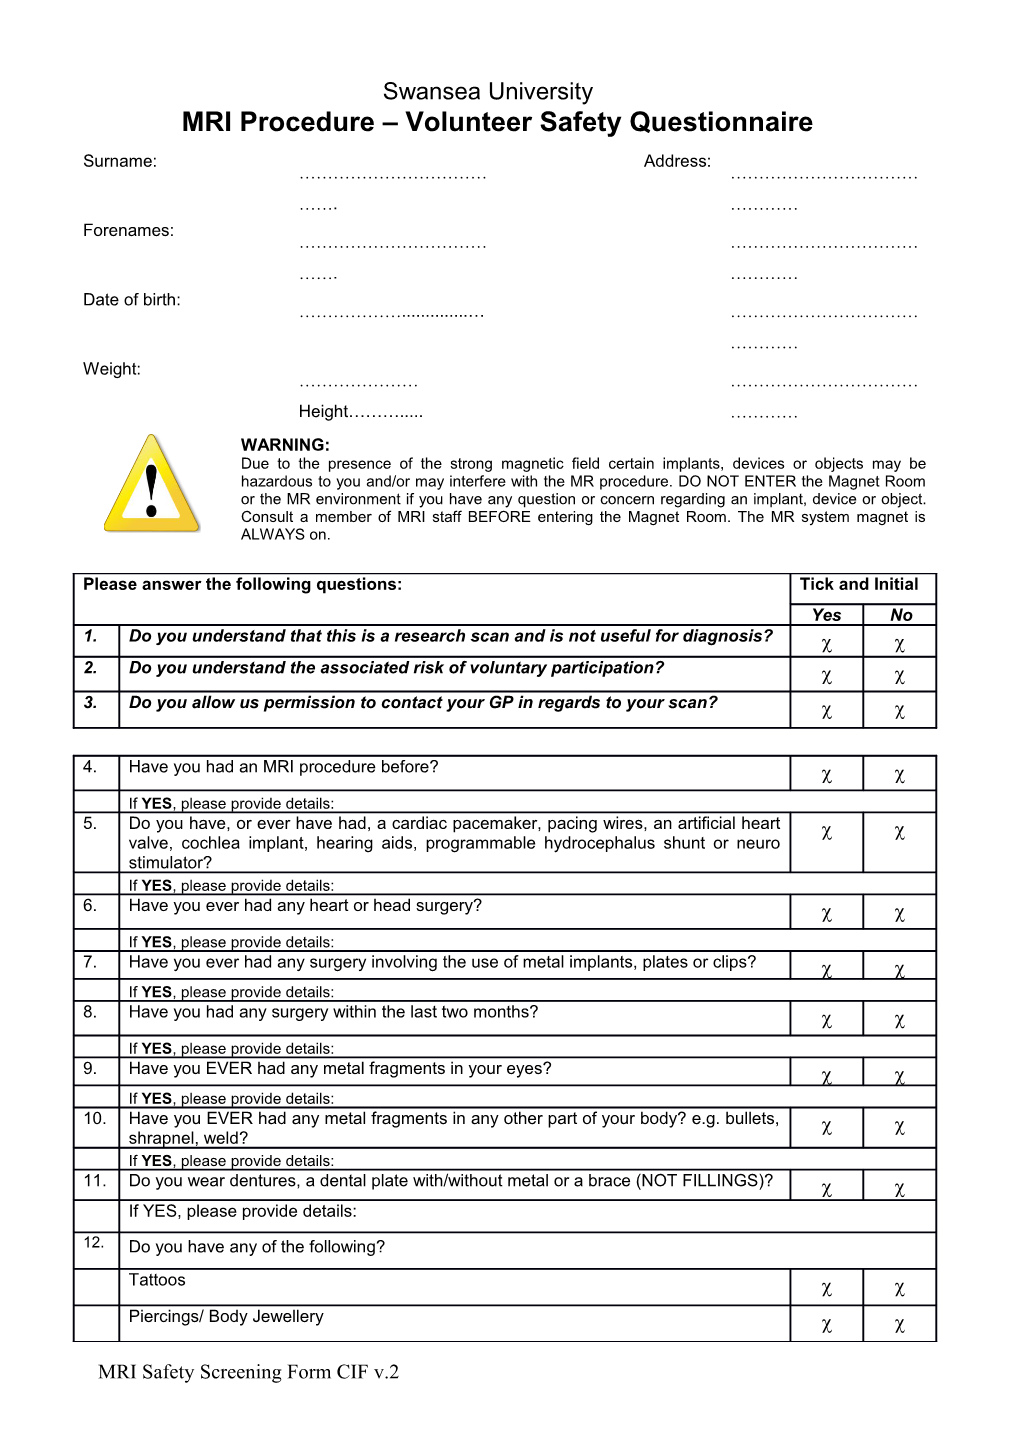 MRI Procedure Volunteer Safety Questionnaire